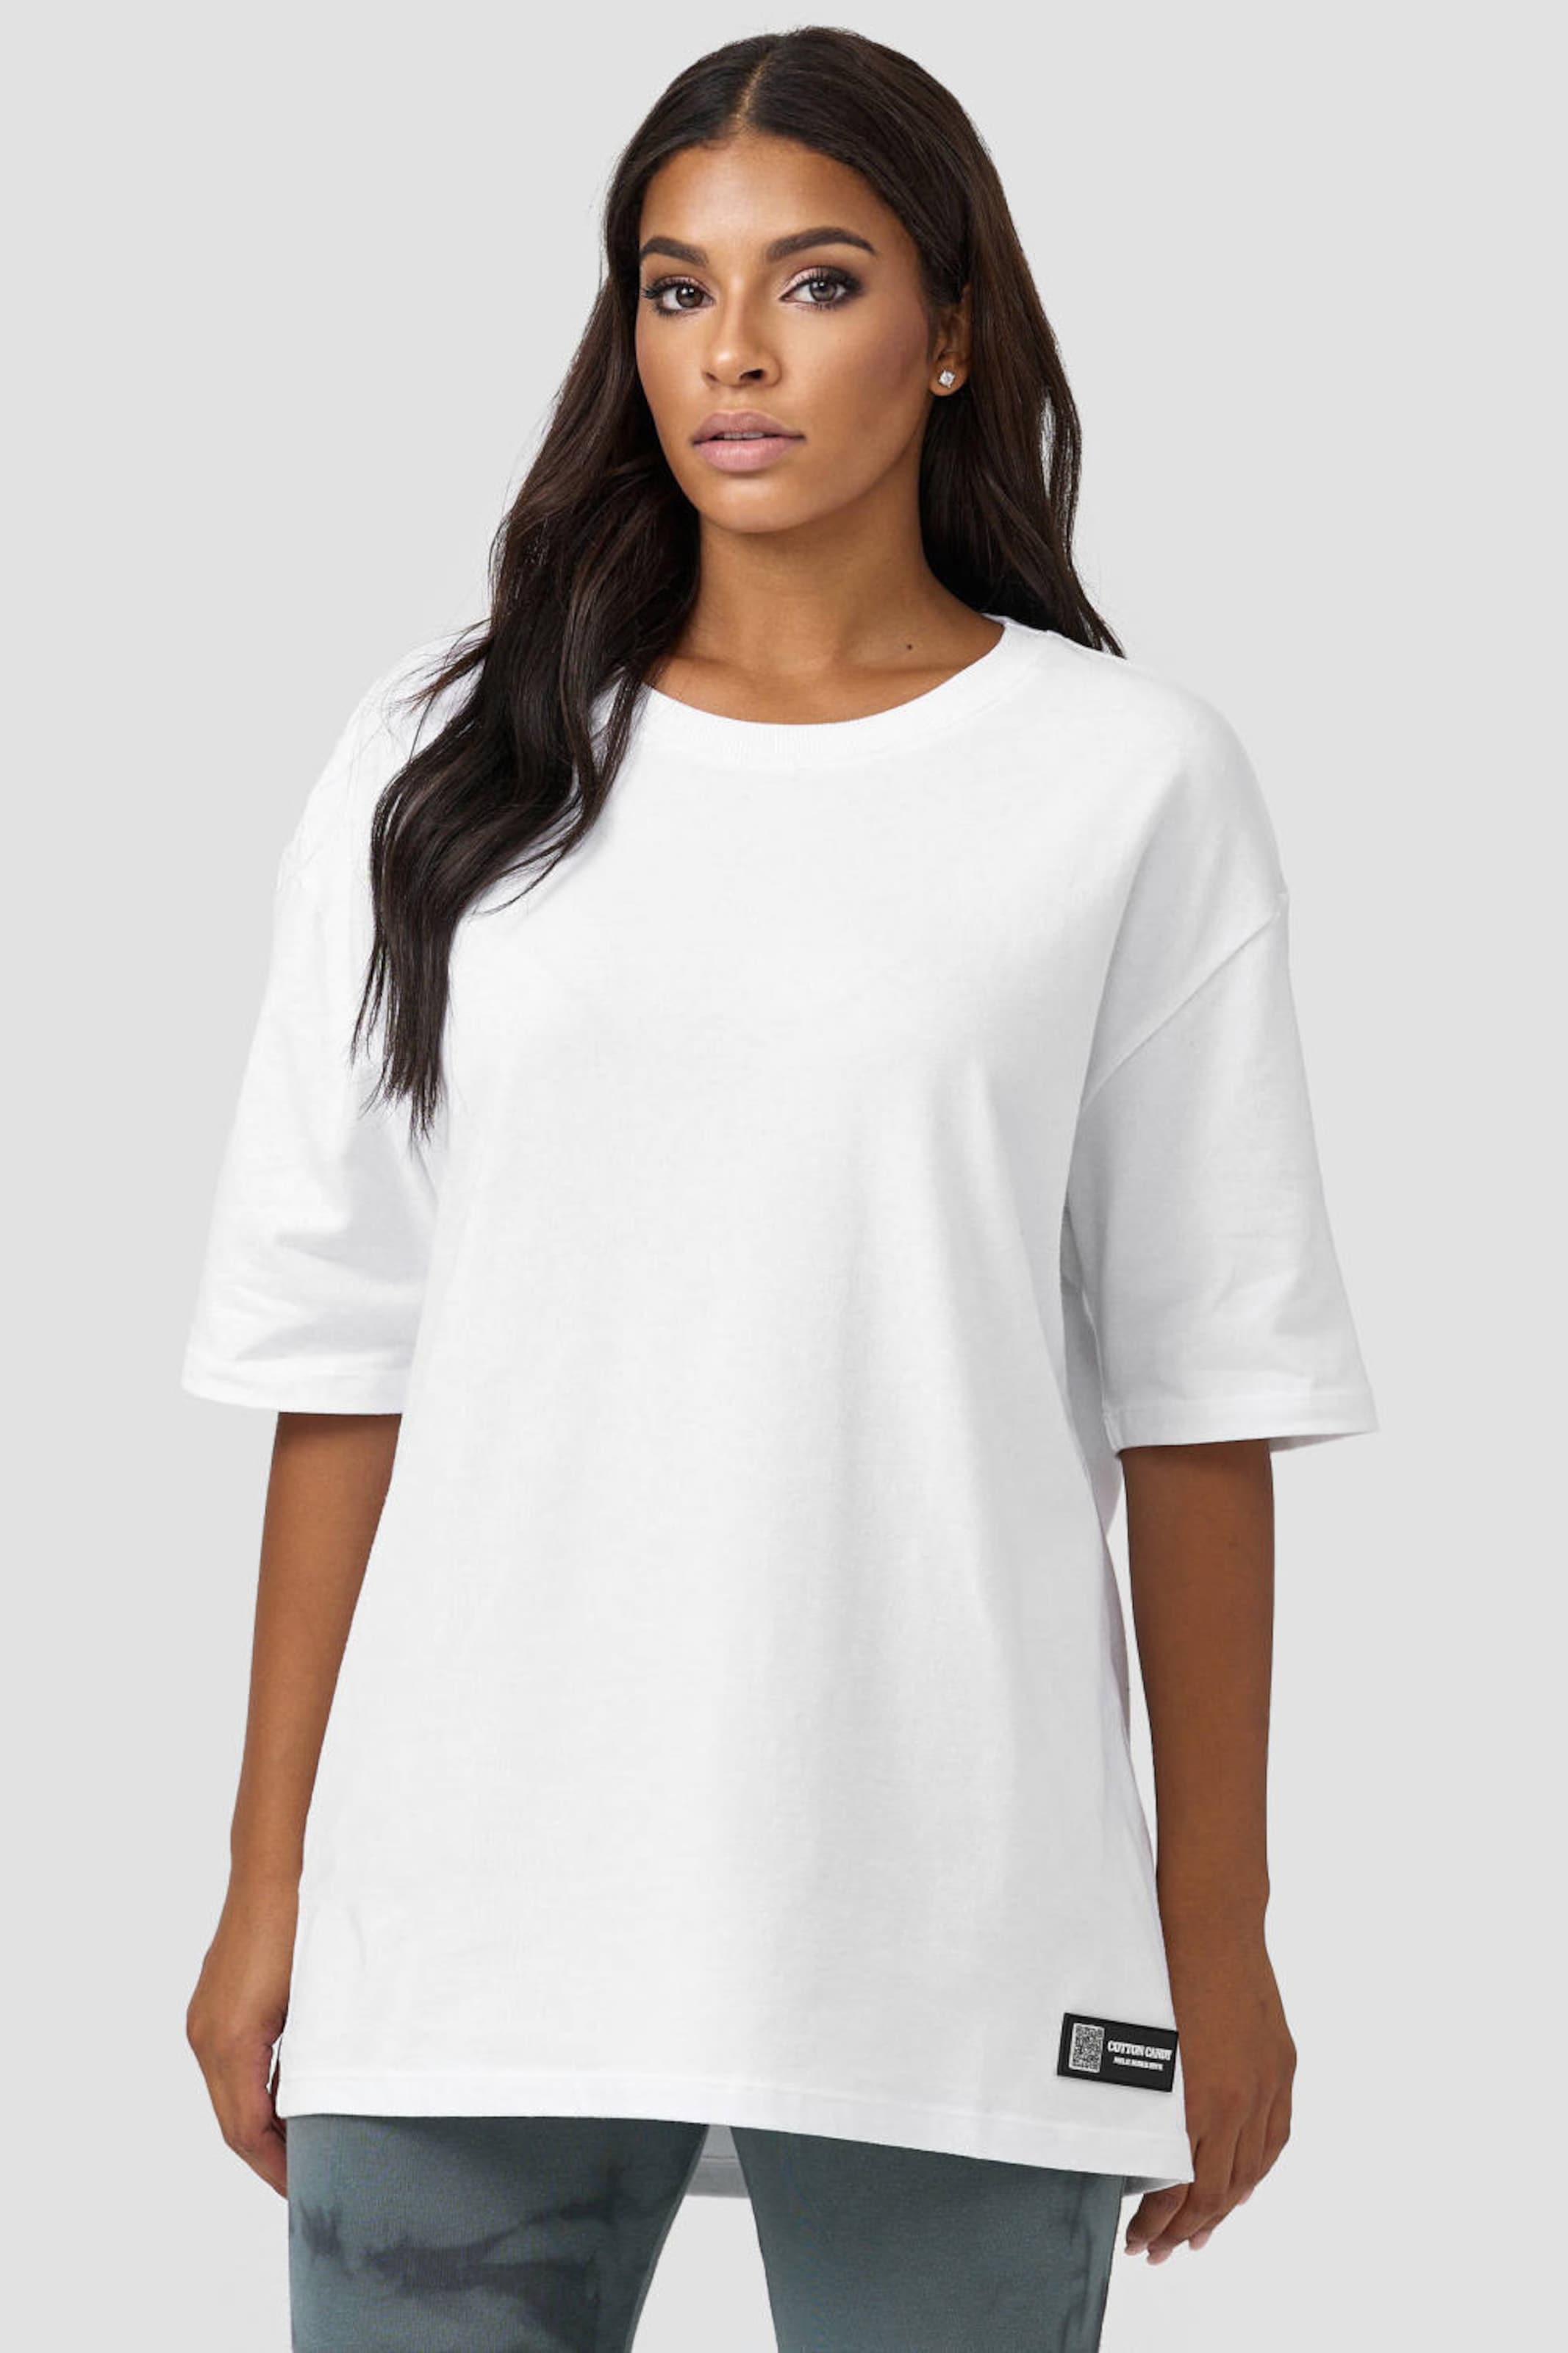 Frauen Shirts & Tops Cotton Candy Rundhals-Shirt in Weiß - FC43956